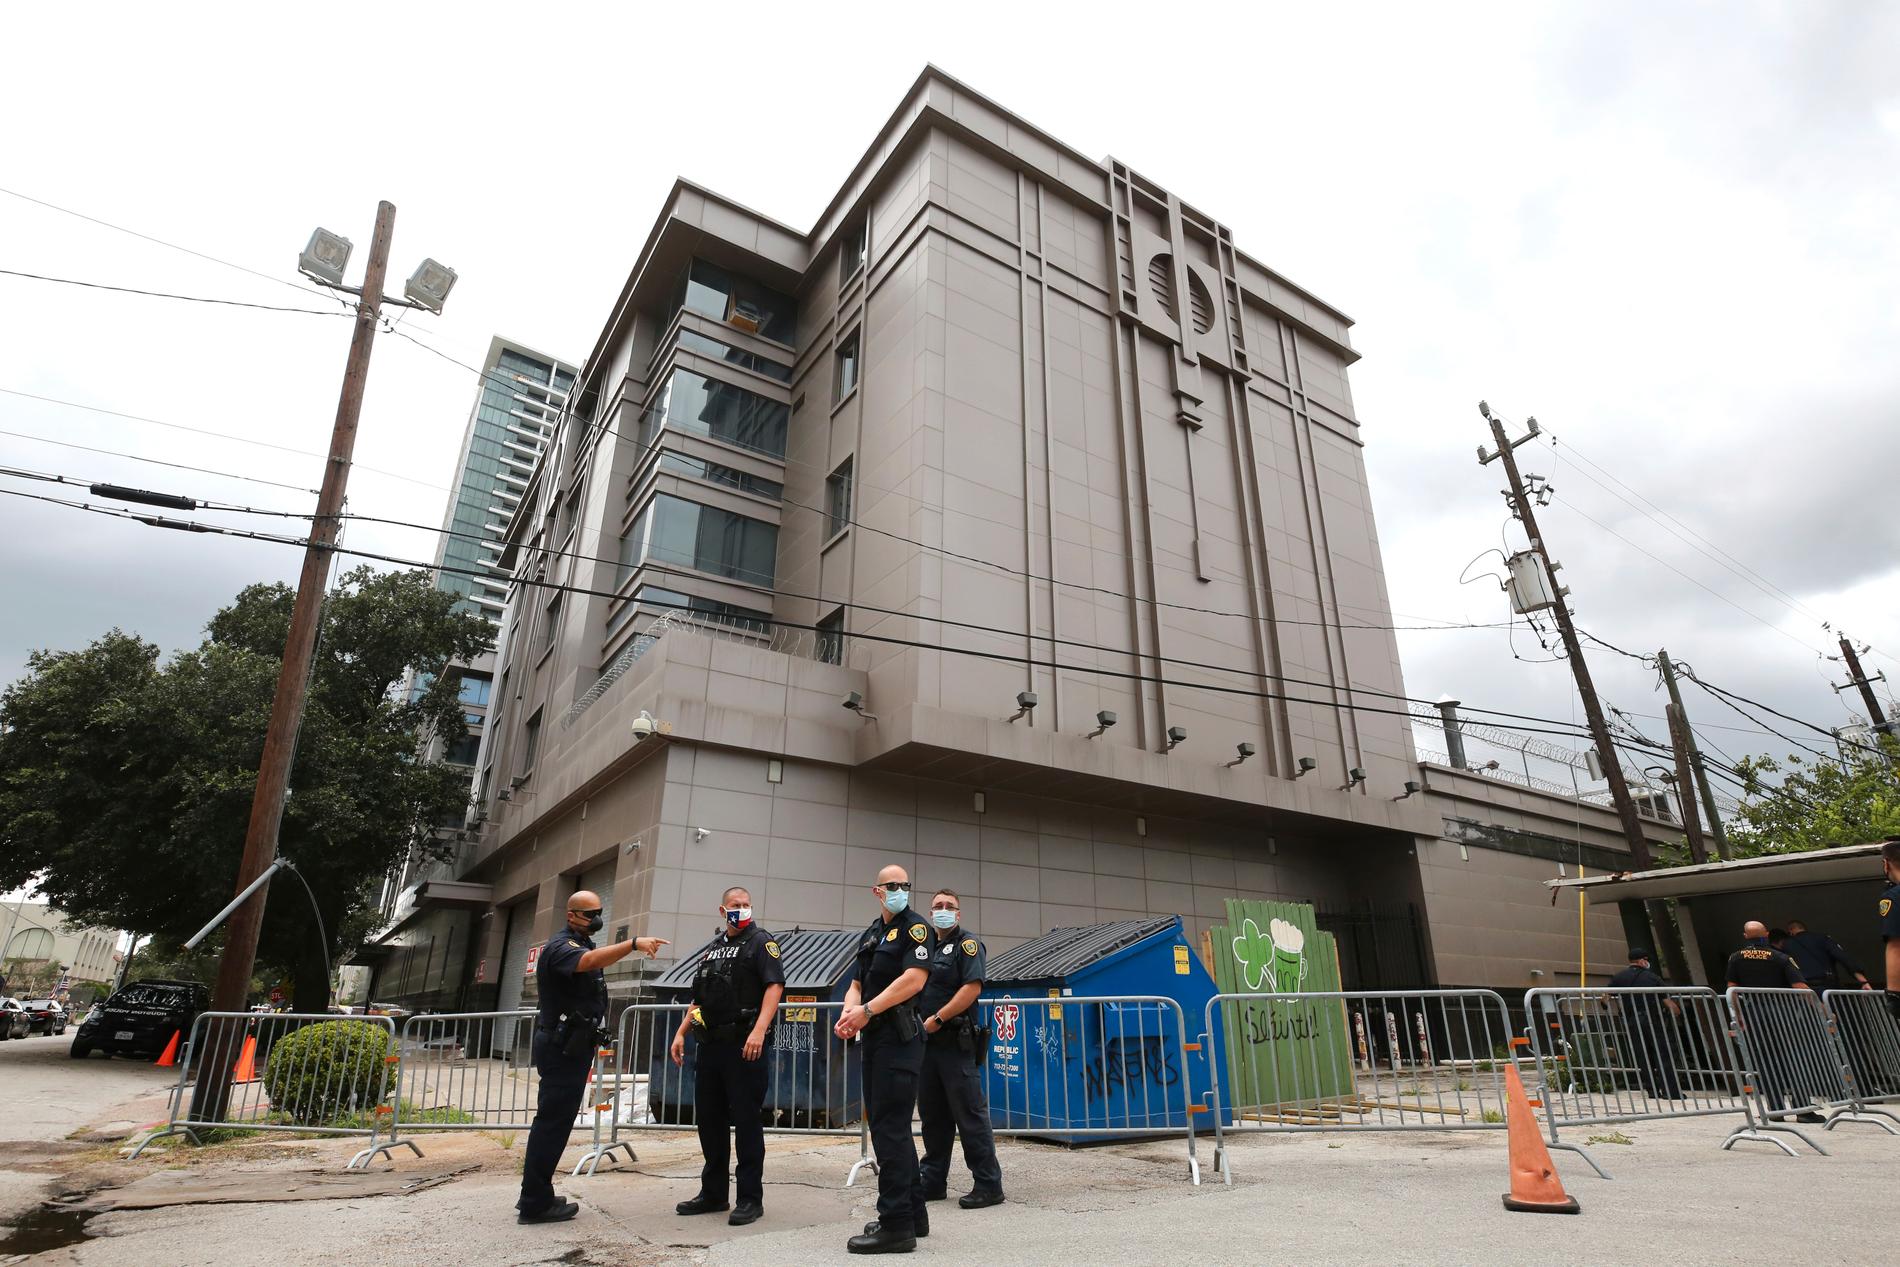 Amerikansk polis utanför Kinas konsulat i Houston under fredagen.